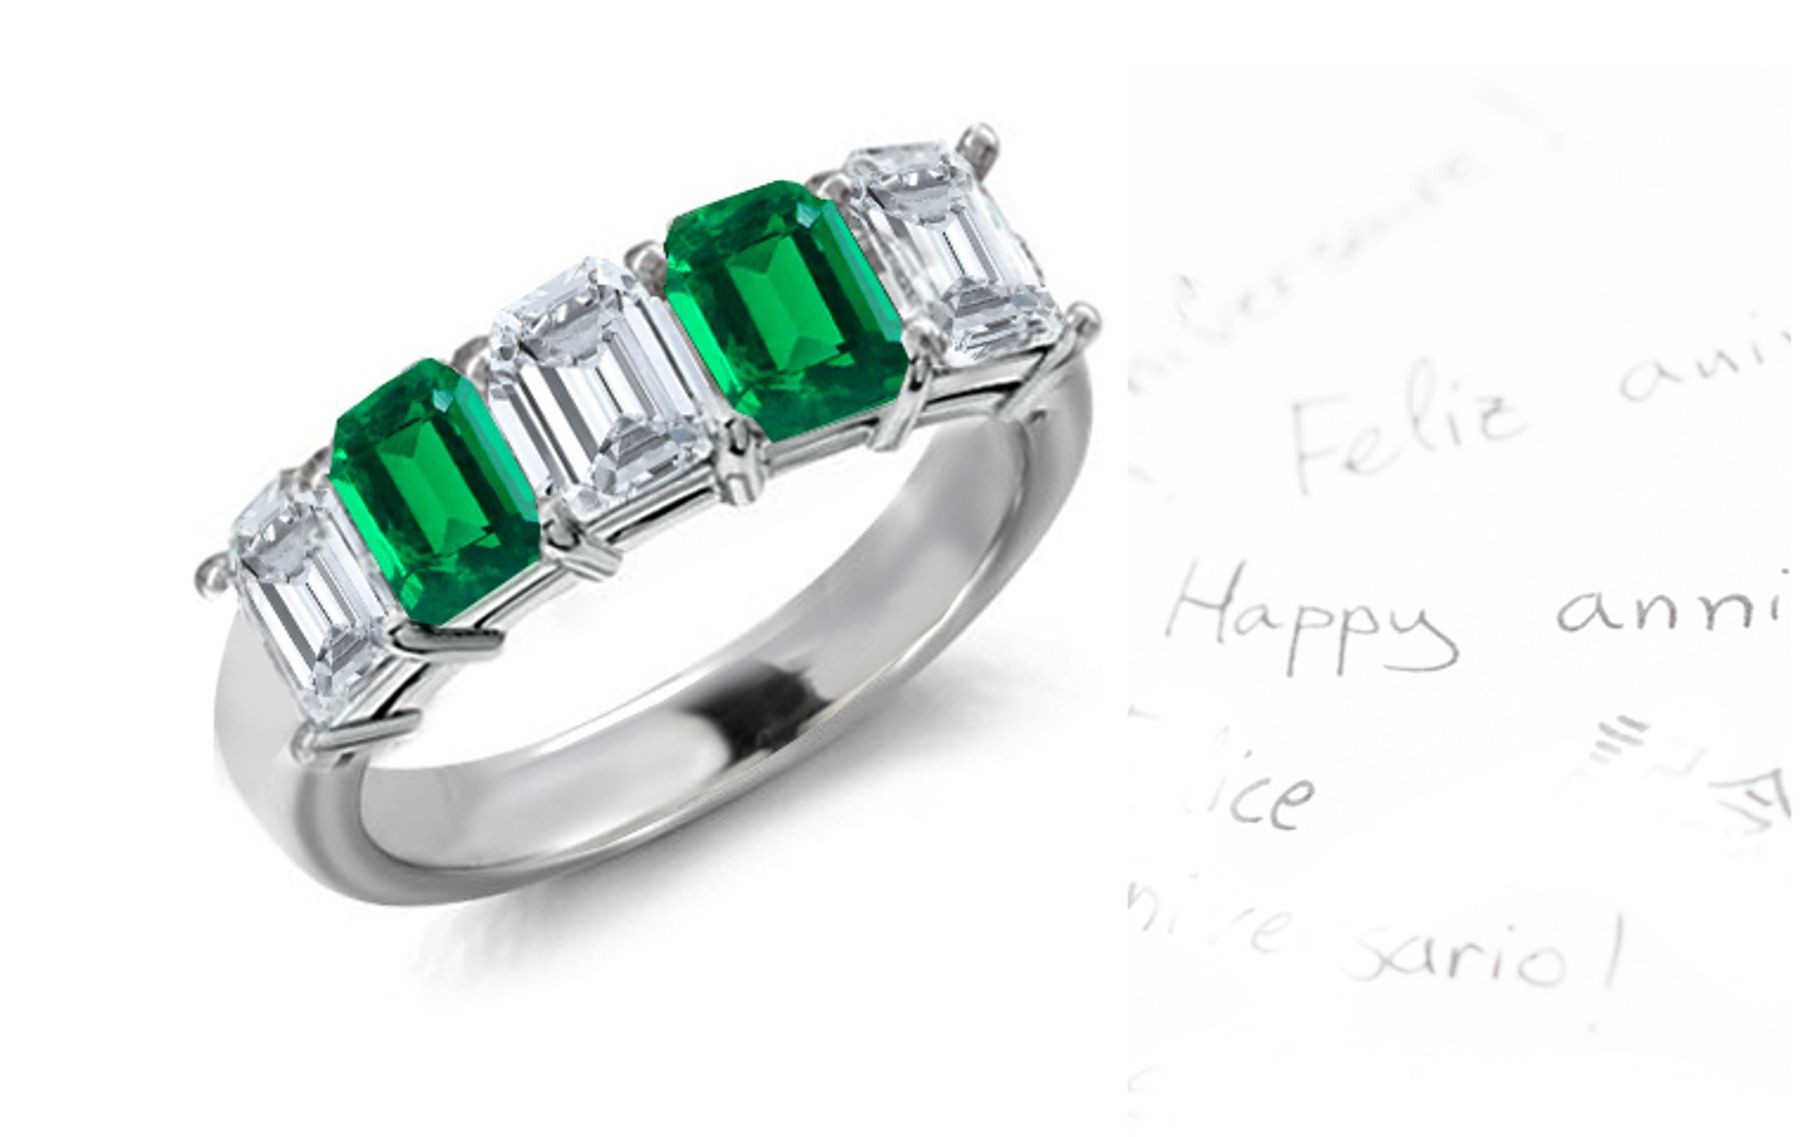 Precious Promises: 5 Stone Emerald Cut Diamond & Emerald Cut Emerald Ring in Gold